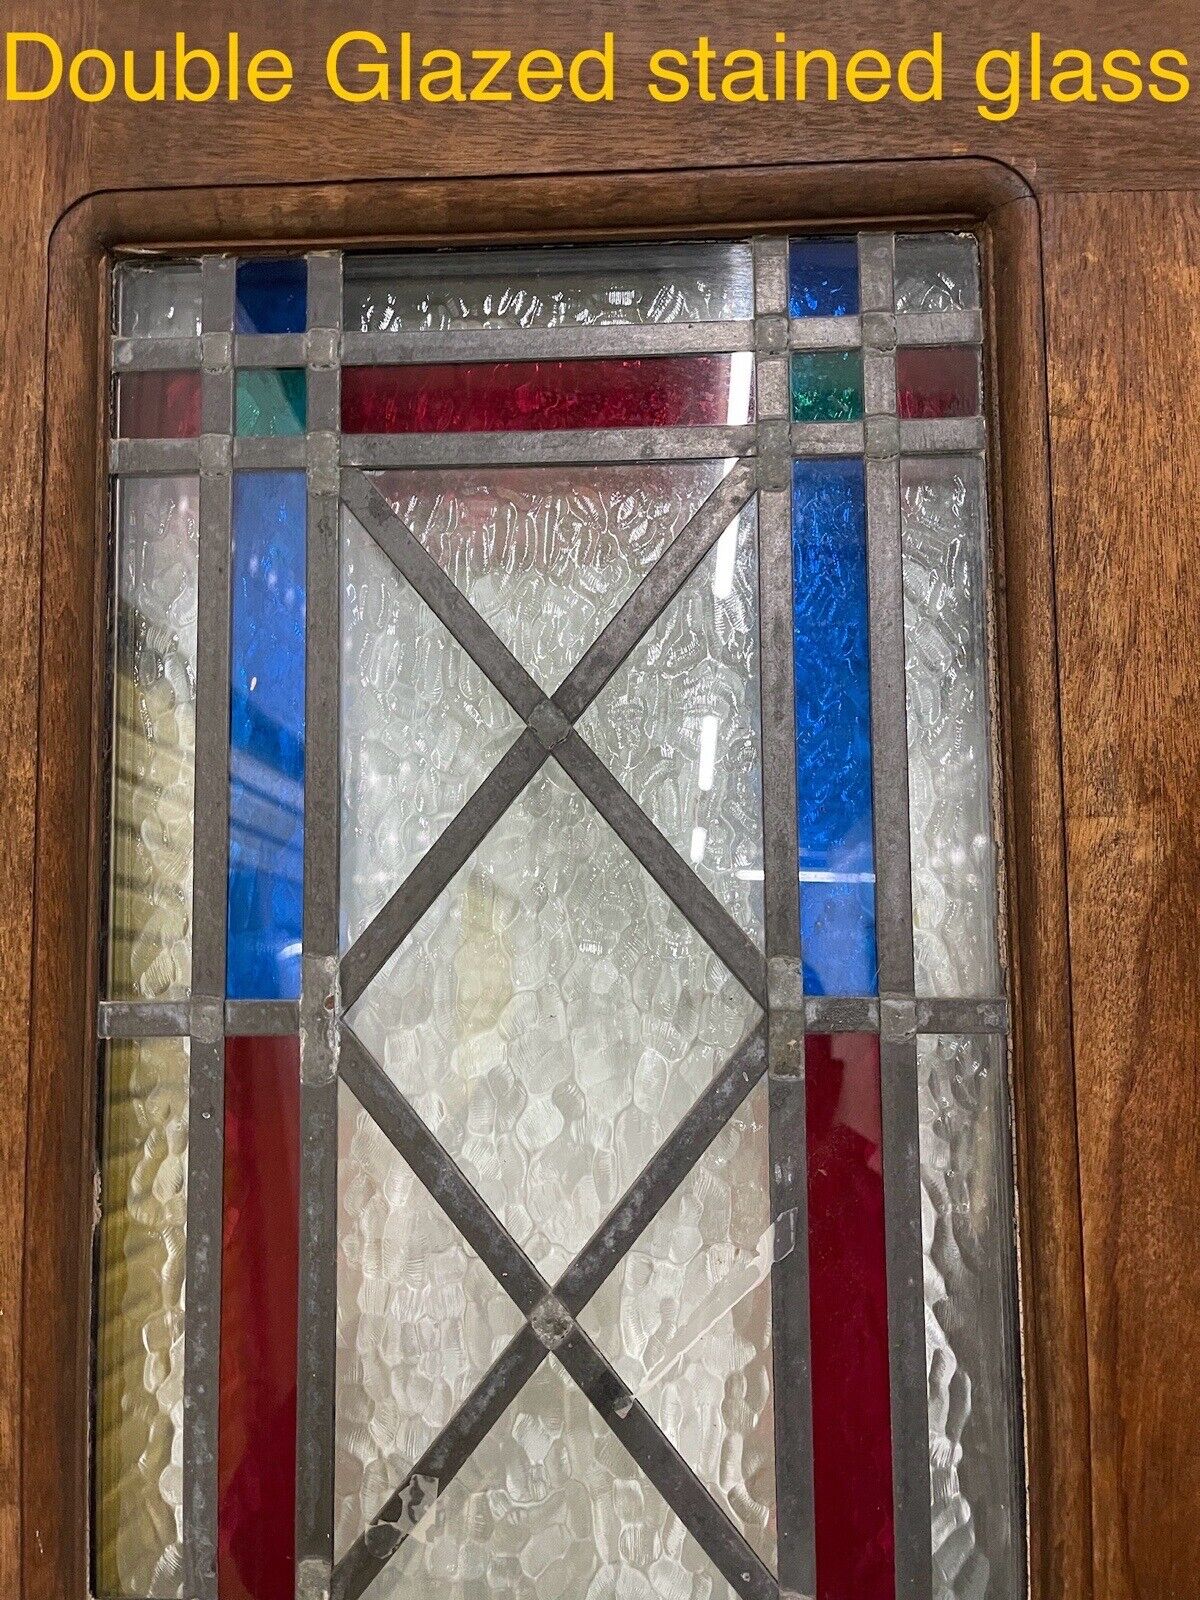 Reclaimed Old Bespoke Wooden Panel Front Door 2030 Or 2020 x 815 or 825mm